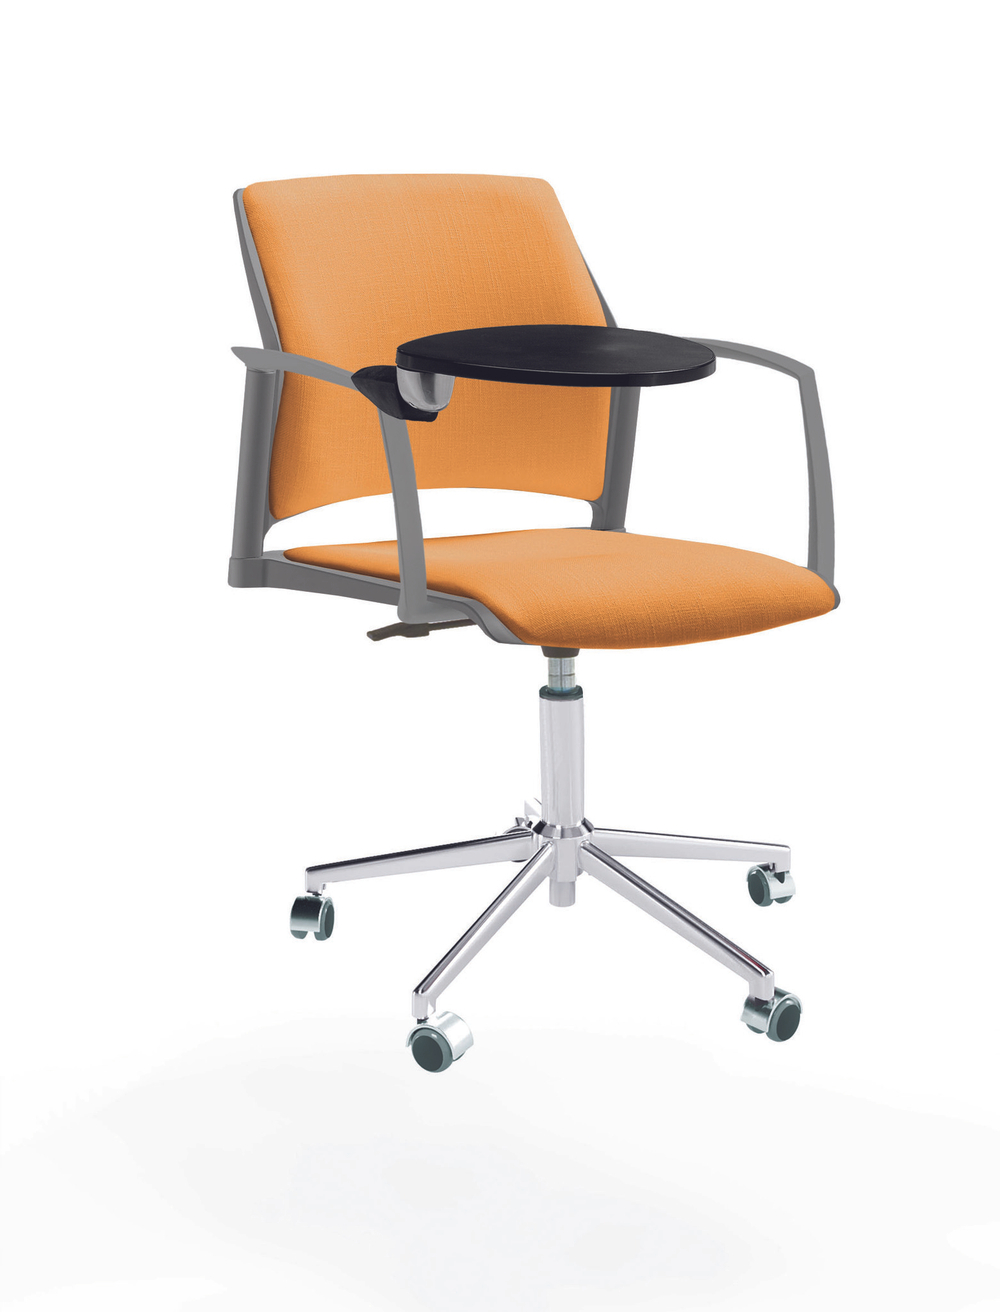 Кресло Rewind каркас хром, пластик серый, база стальная хромированная, с закрытыми подлокотниками и пюпитром, сиденье и спинка оранжевые